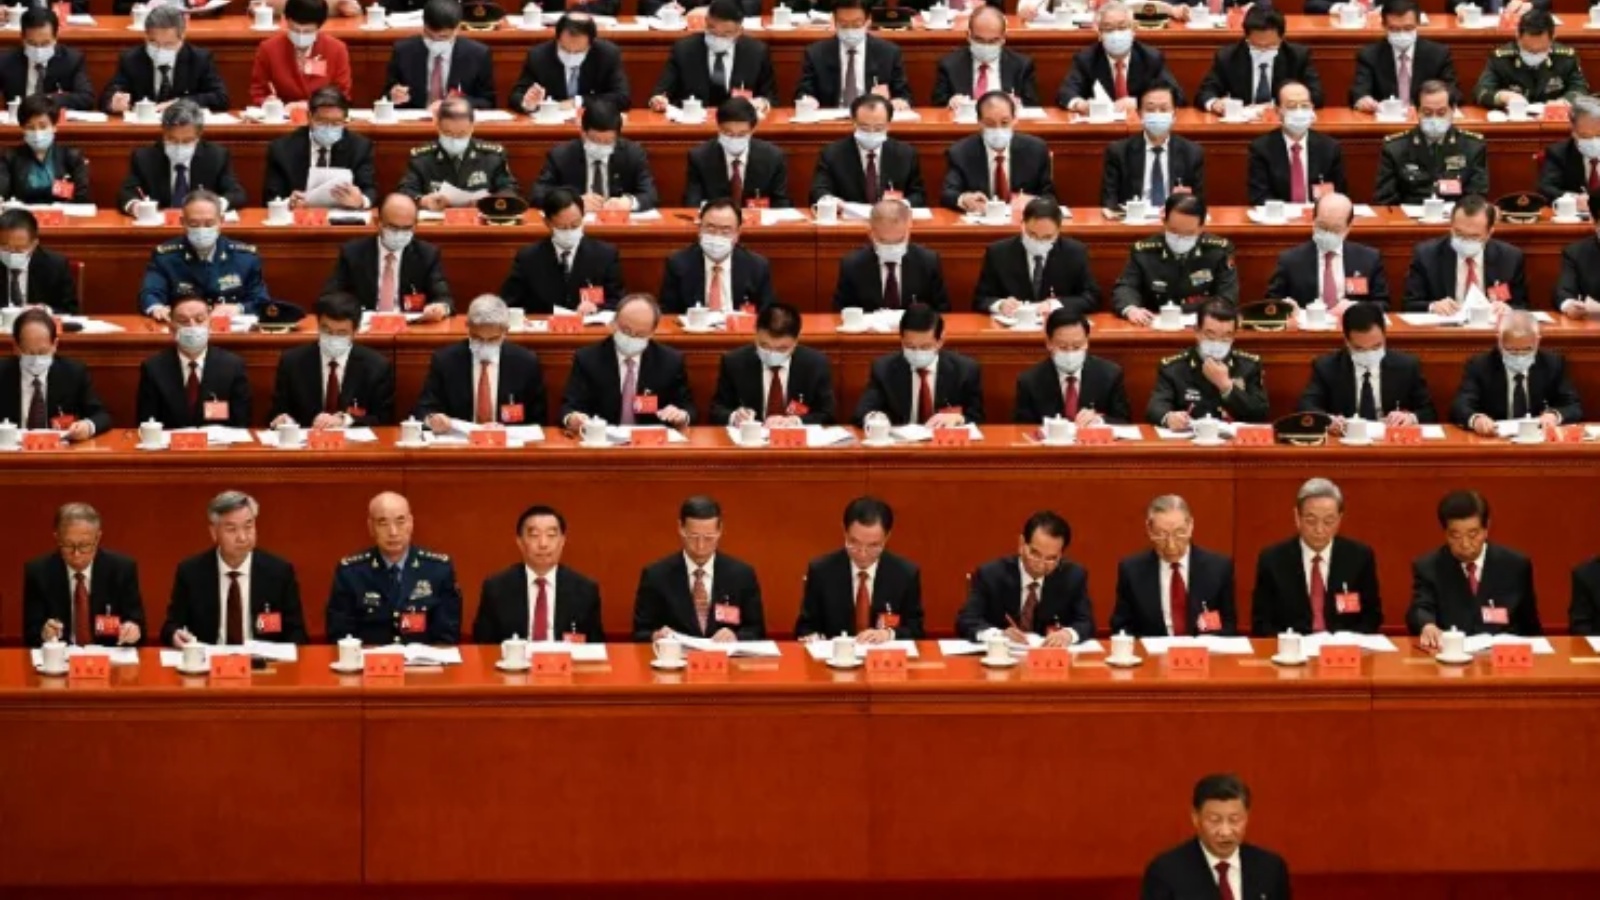 الرئيس الصيني شي جينبينغ (أمام اليمين) خلال الجلسة الافتتاحية للمؤتمر العشرين للحزب الشيوعي الصيني في قاعة الشعب الكبرى في بكين في 16 أكتوبر 2022